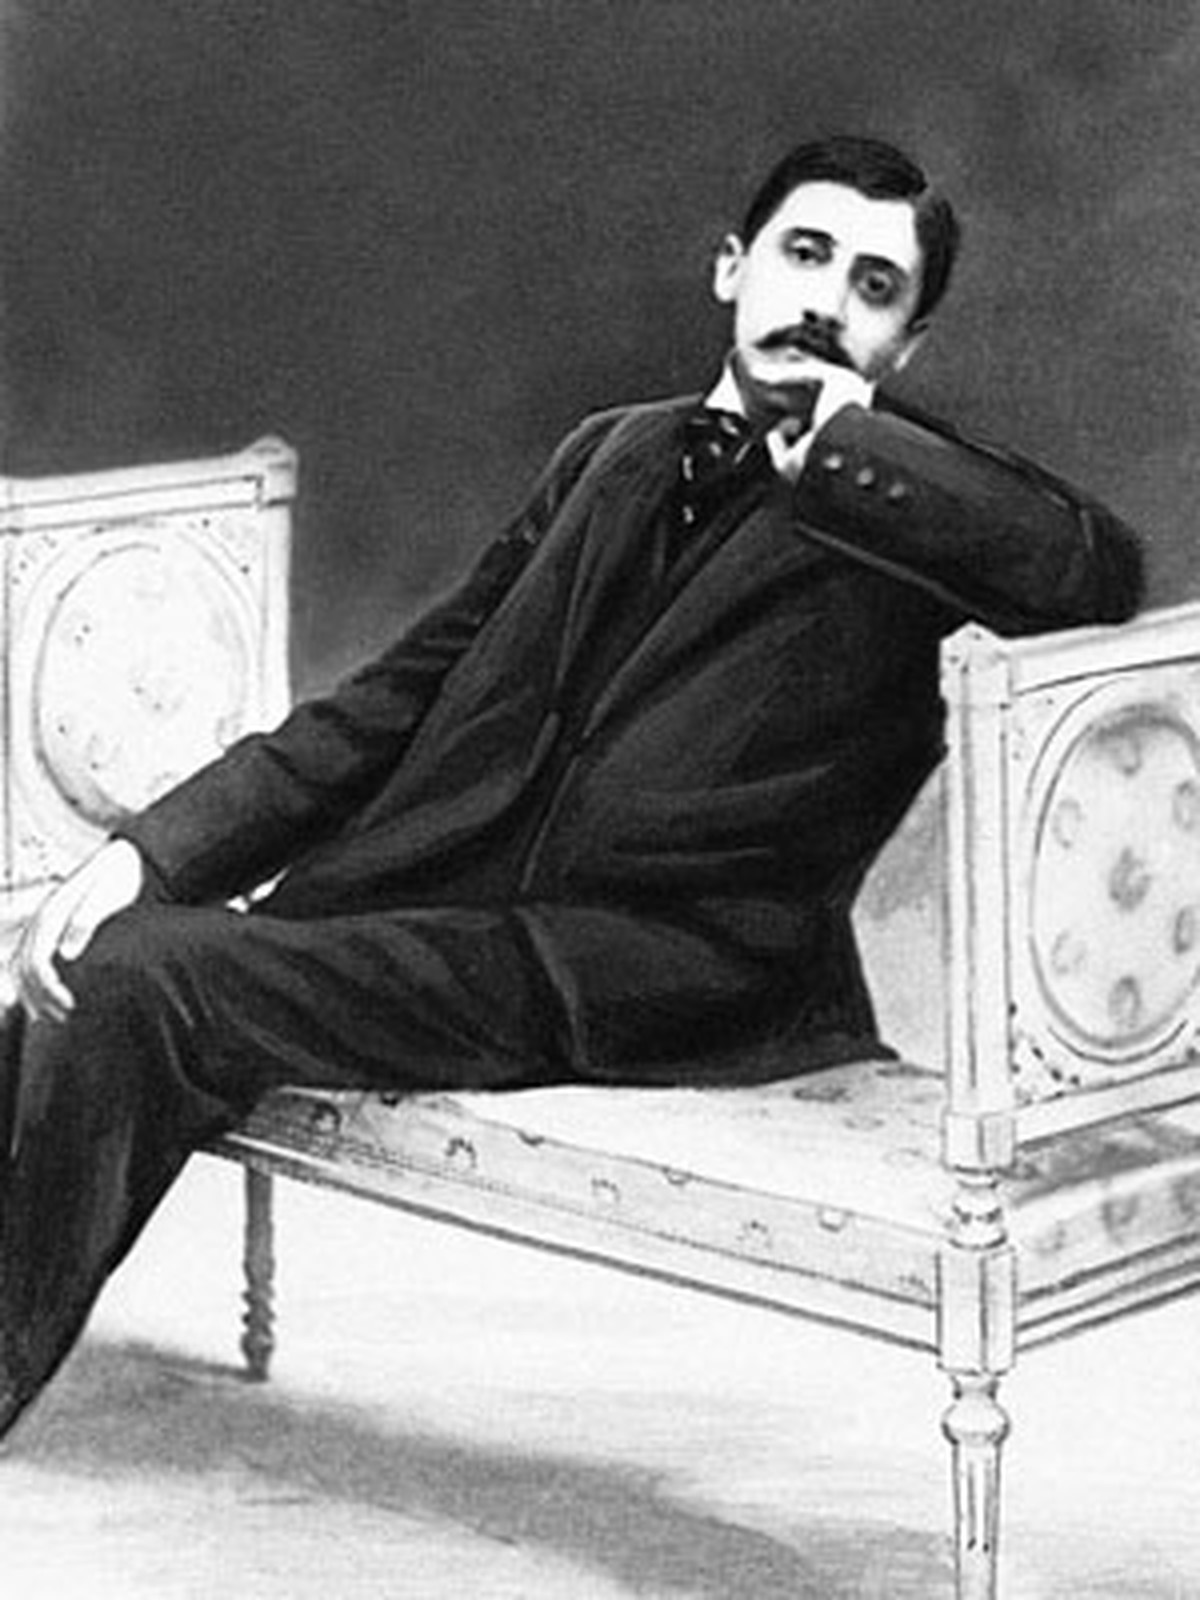 Des lettres de Marcel Proust parlent d’un « ami ennuyeux » qui s’est retrouvé au Brésil |  Pop et art